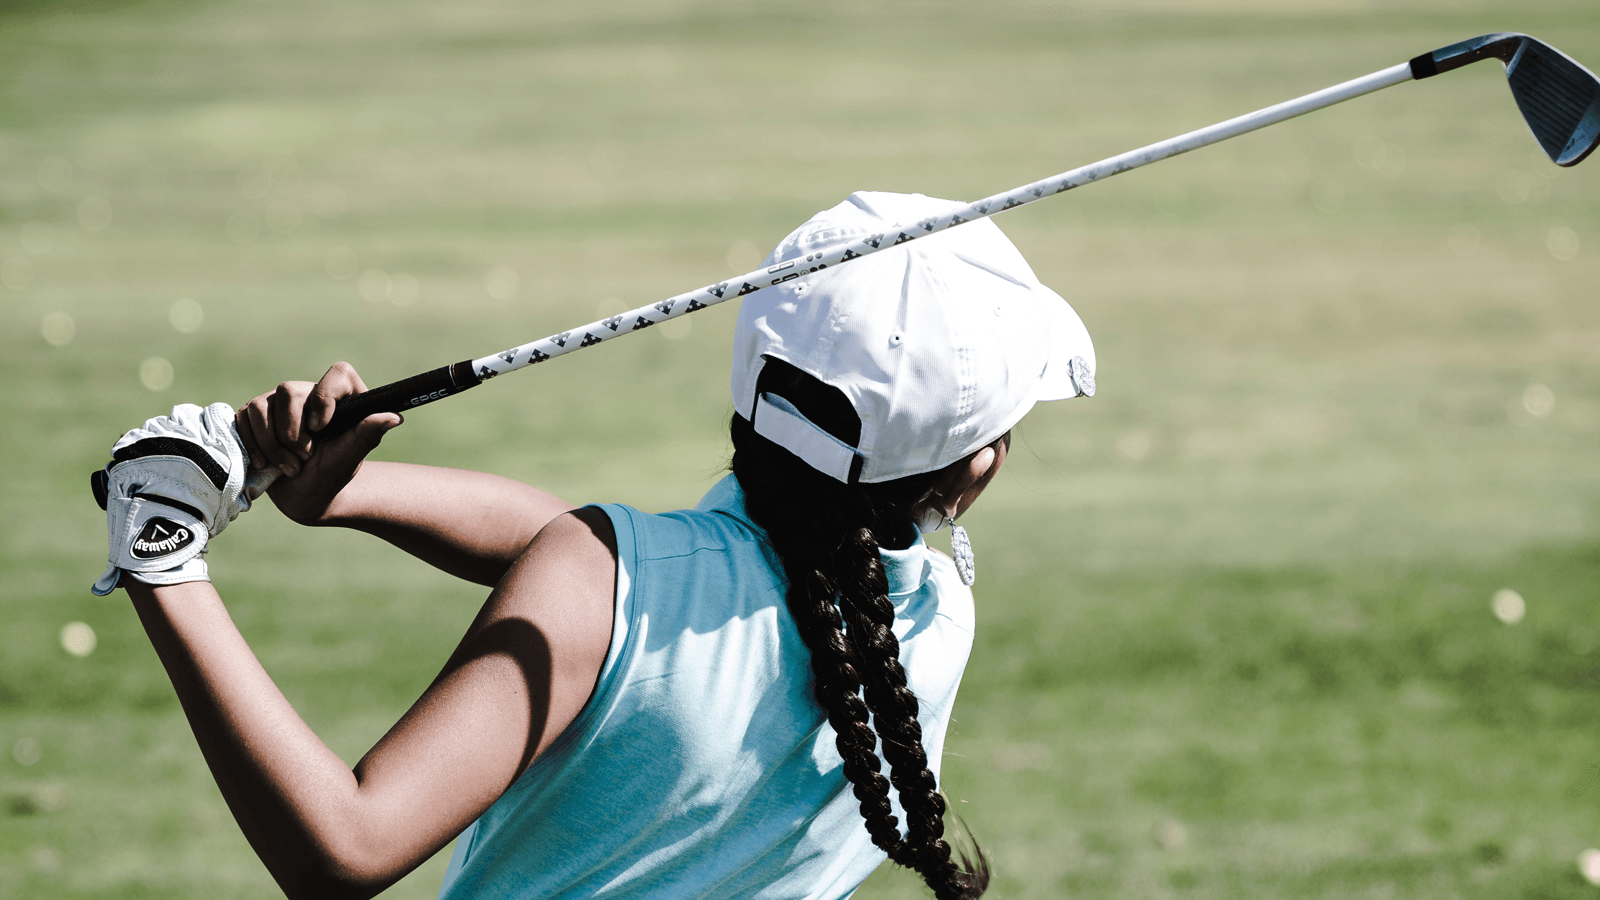 Đánh golf là một môn thể thao “quý tộc” vì không phải ai cũng có khả năng theo đuổi nó. Tuy môn này khá thong thả nhưng đòi hỏi người chơi phải có thể lực tốt và cũng mang lại nhiều lợi ích sức khỏe.